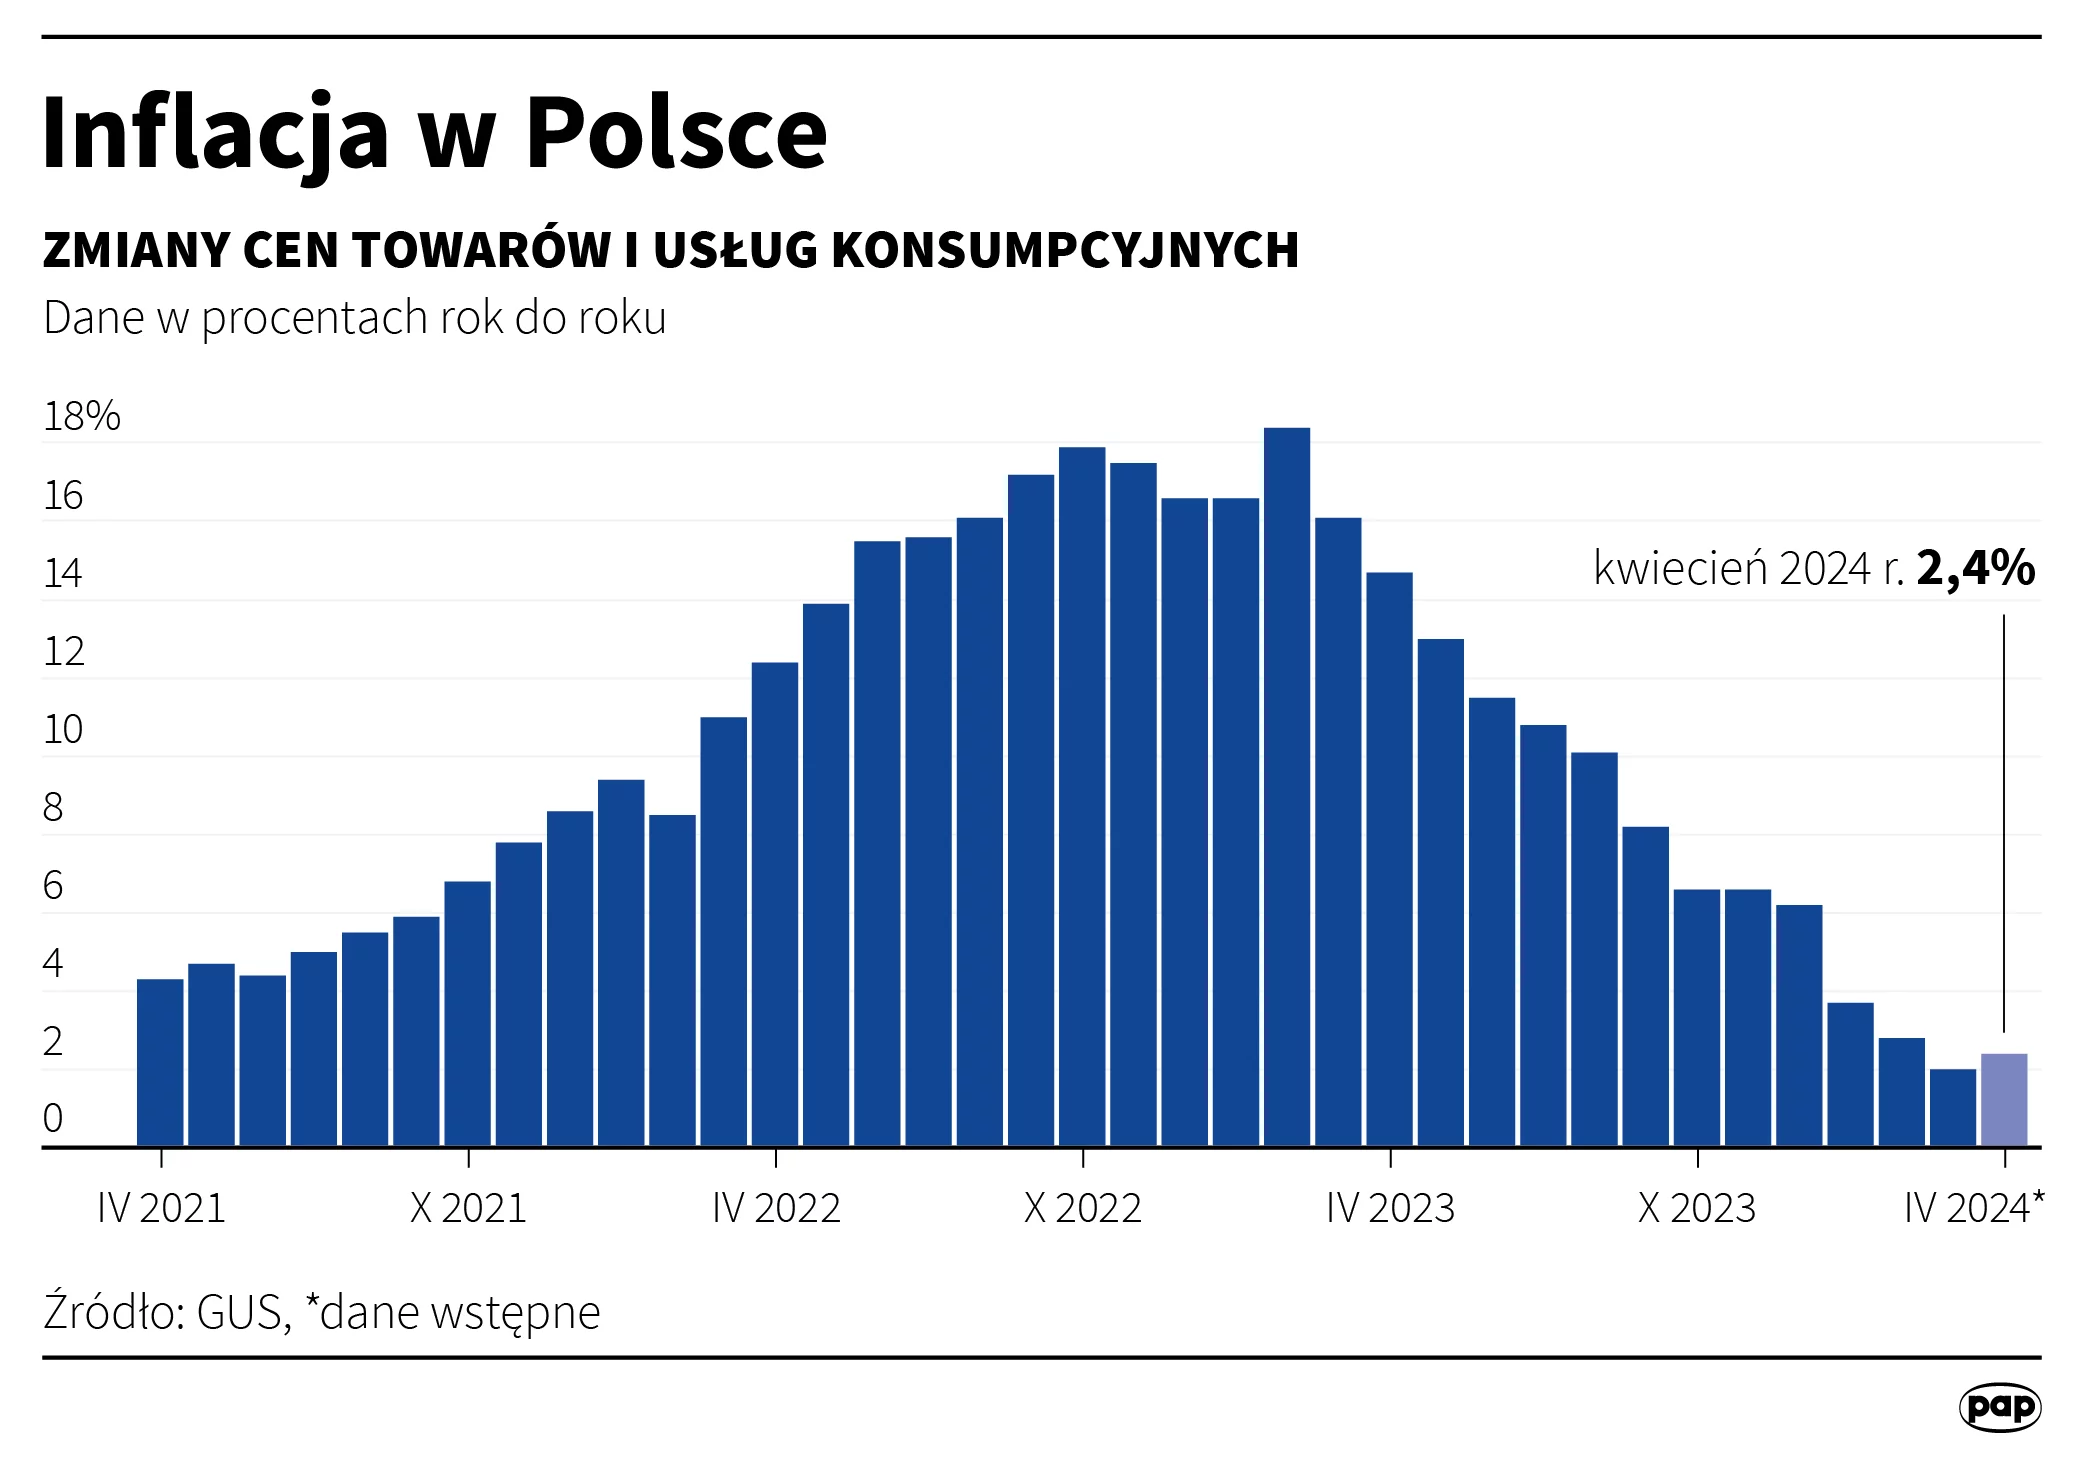 Inflacja w Polsce. Źródło: PAP